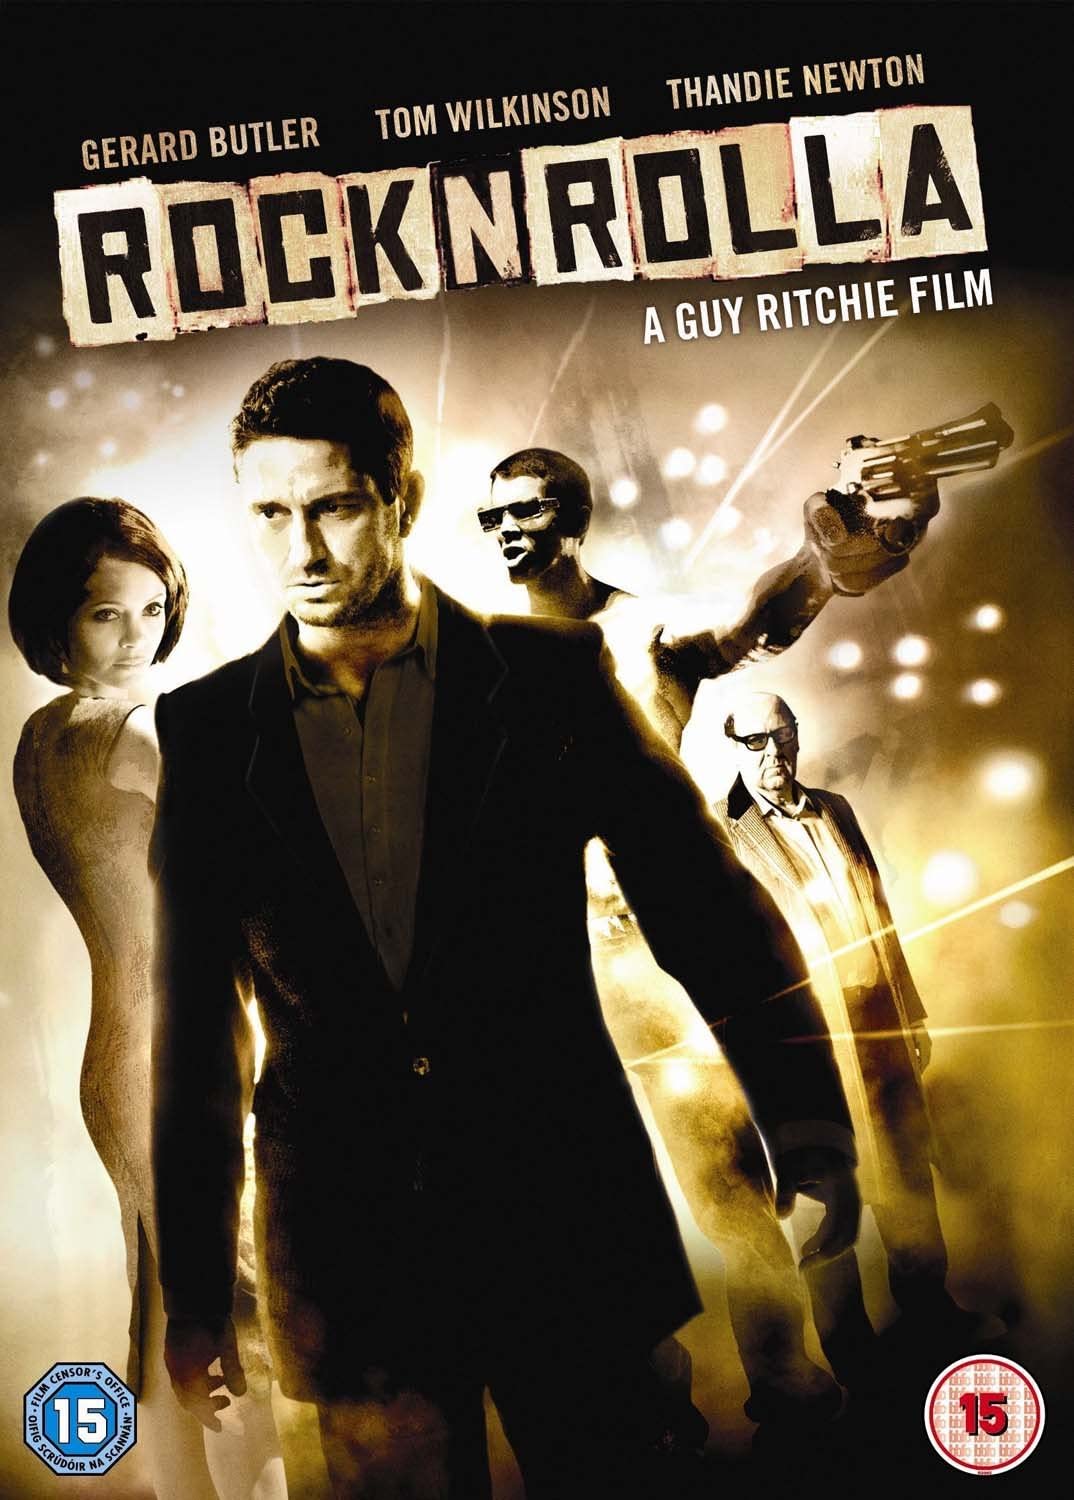 RocknRolla [2008] - Action/Crime [DVD]